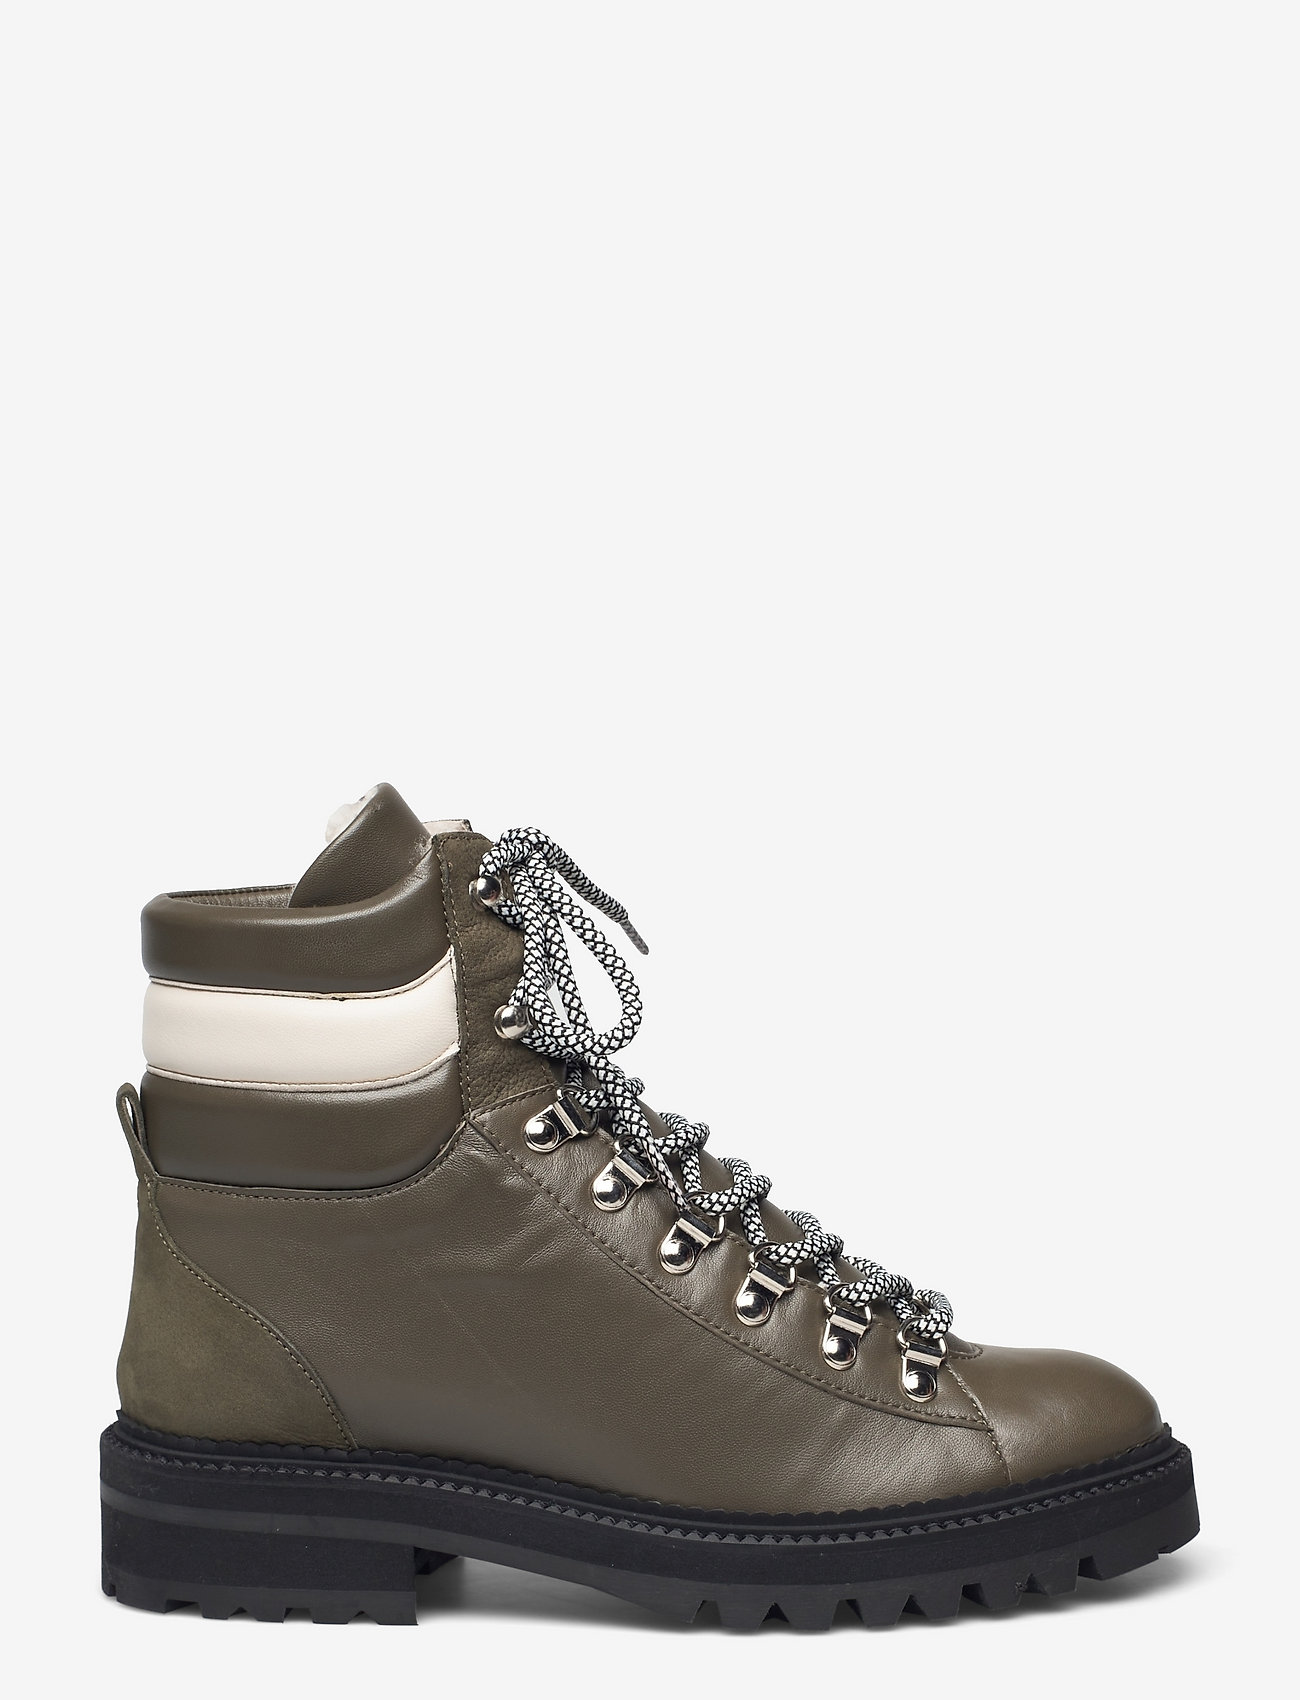 Billi Bi Warm Lining A1294 - Flat ankle boots |